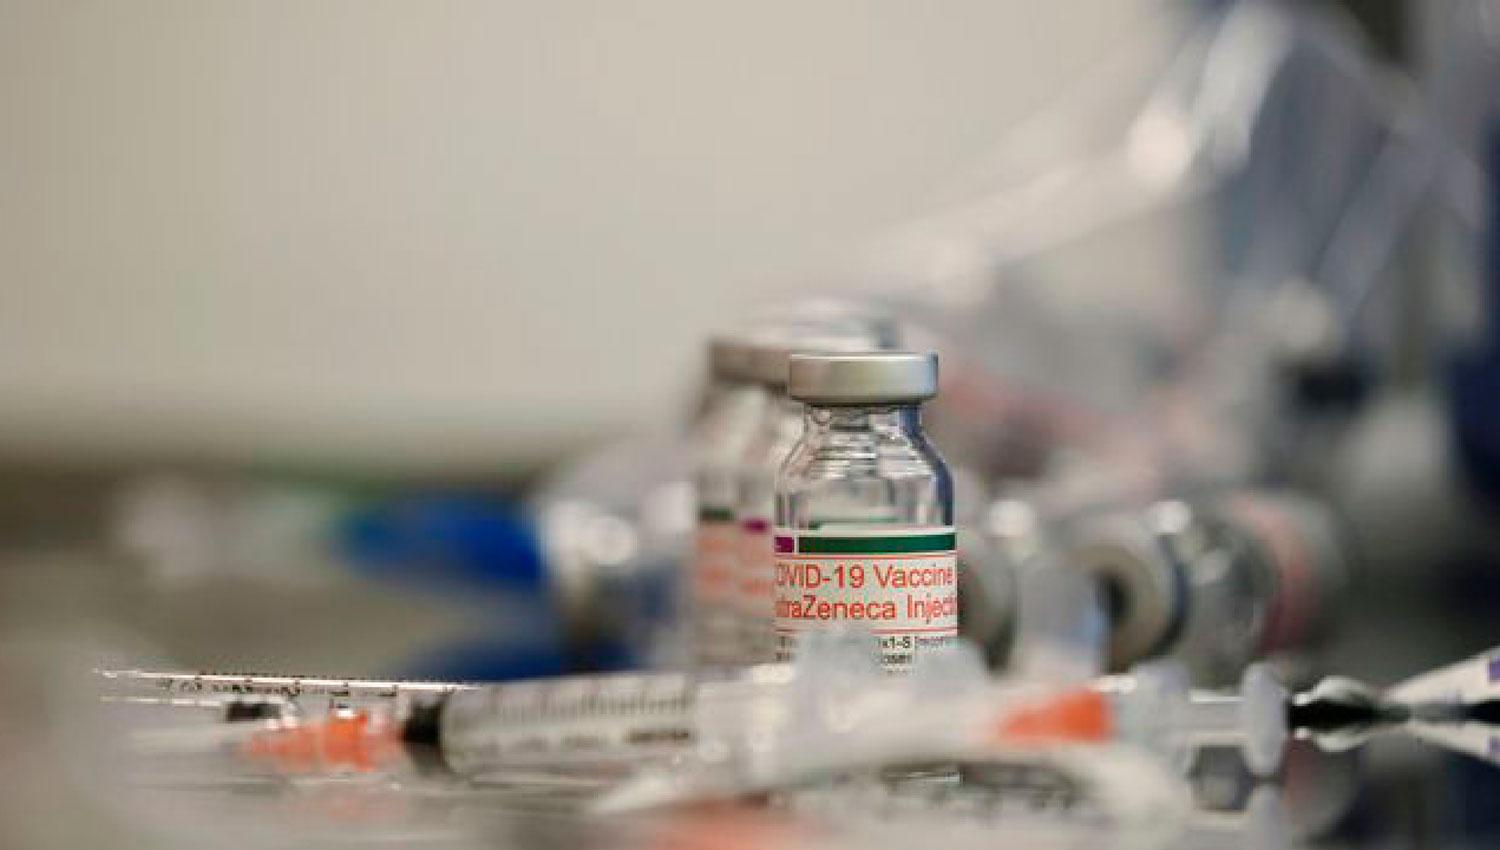 EN ANÁLISIS. La vacuna de AstraZeneca demostró buenos resultados contra las nuevas cepas de coronavirus detectadas en India.